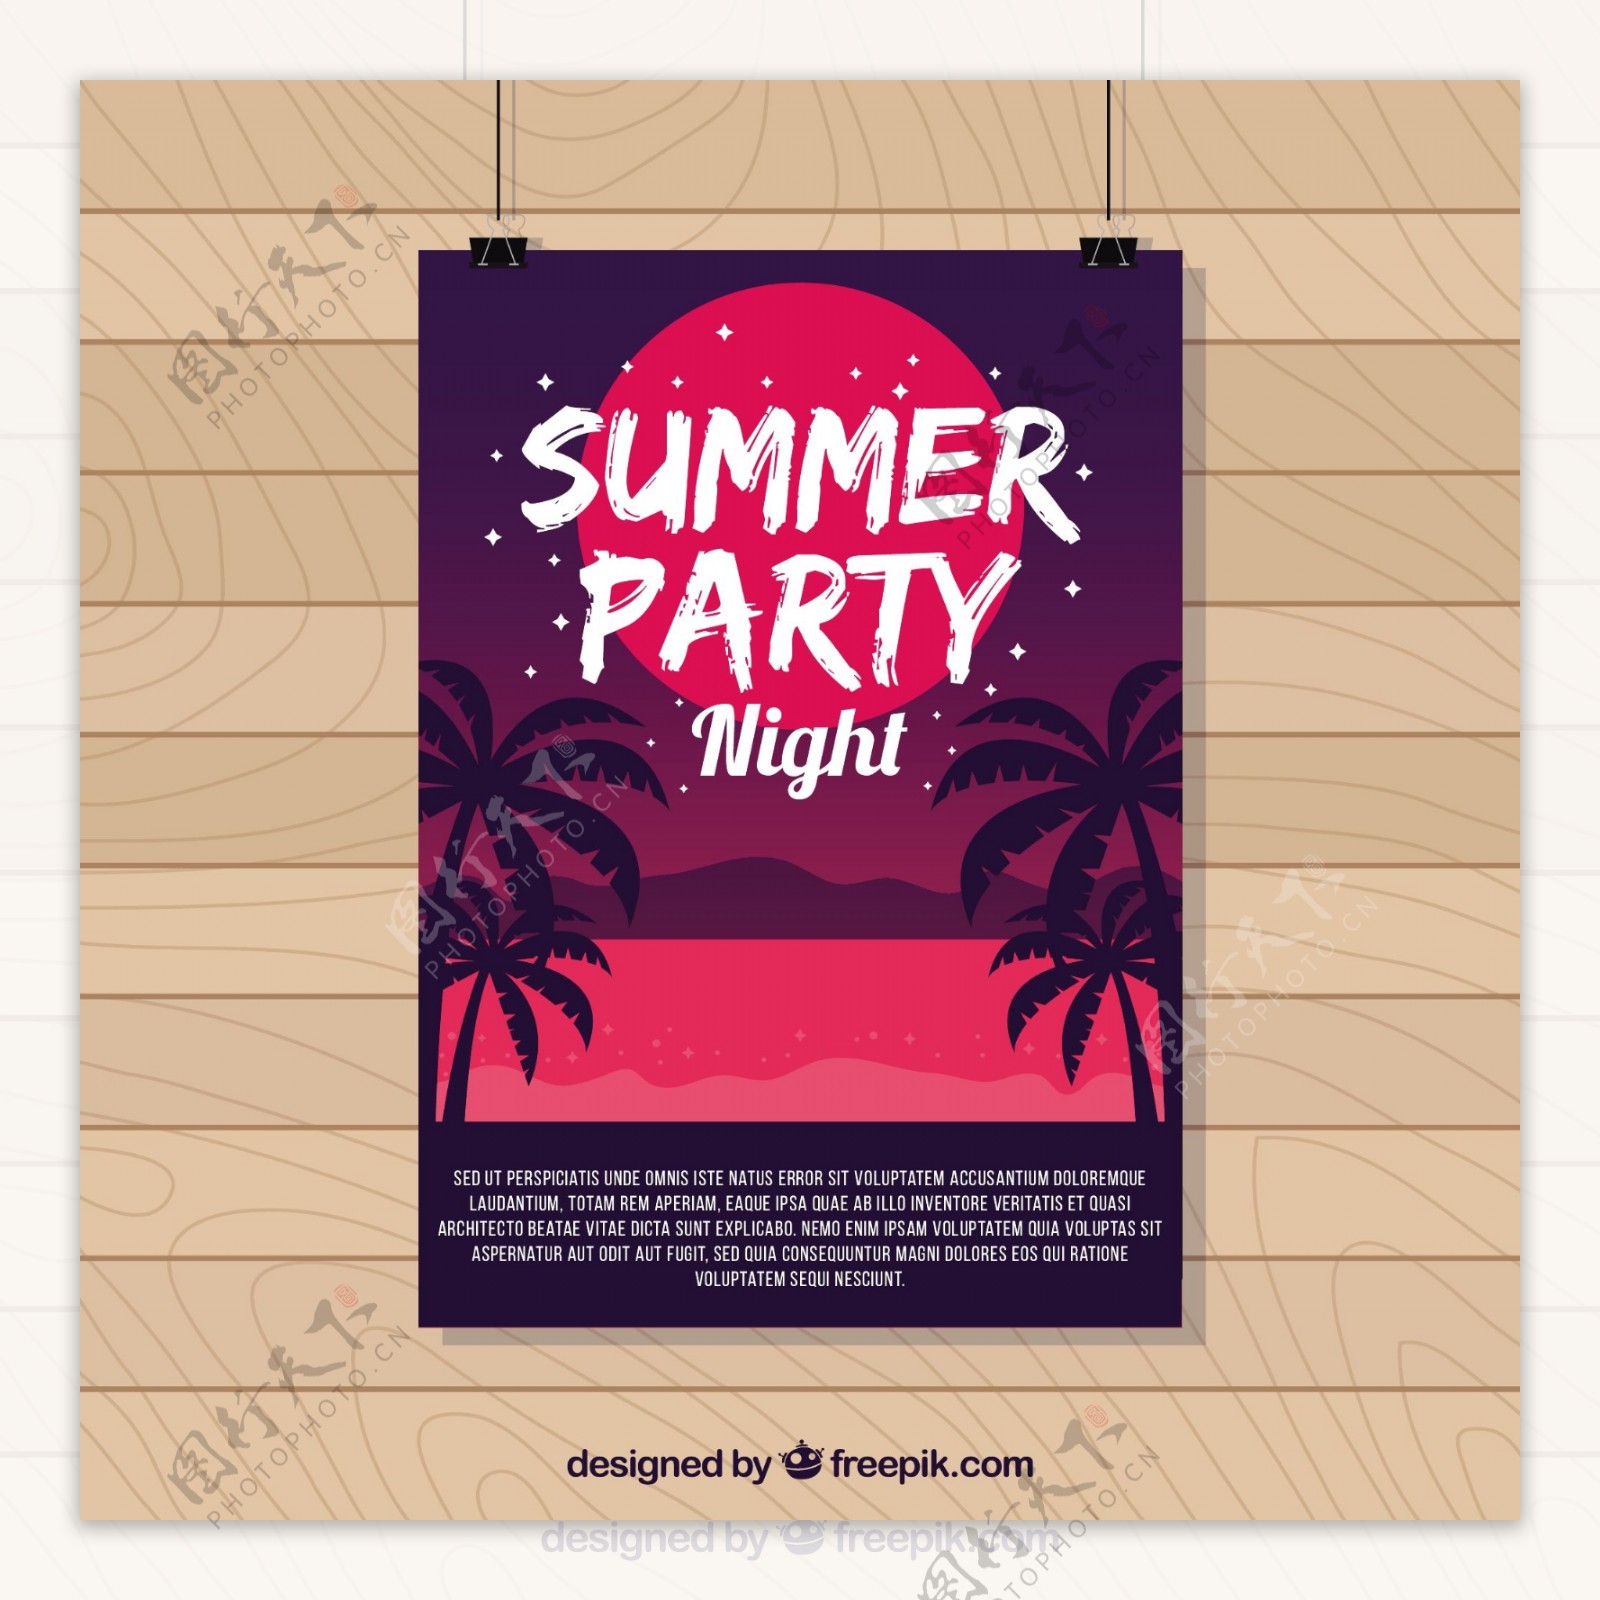 椰树剪影背景夏季派对海报